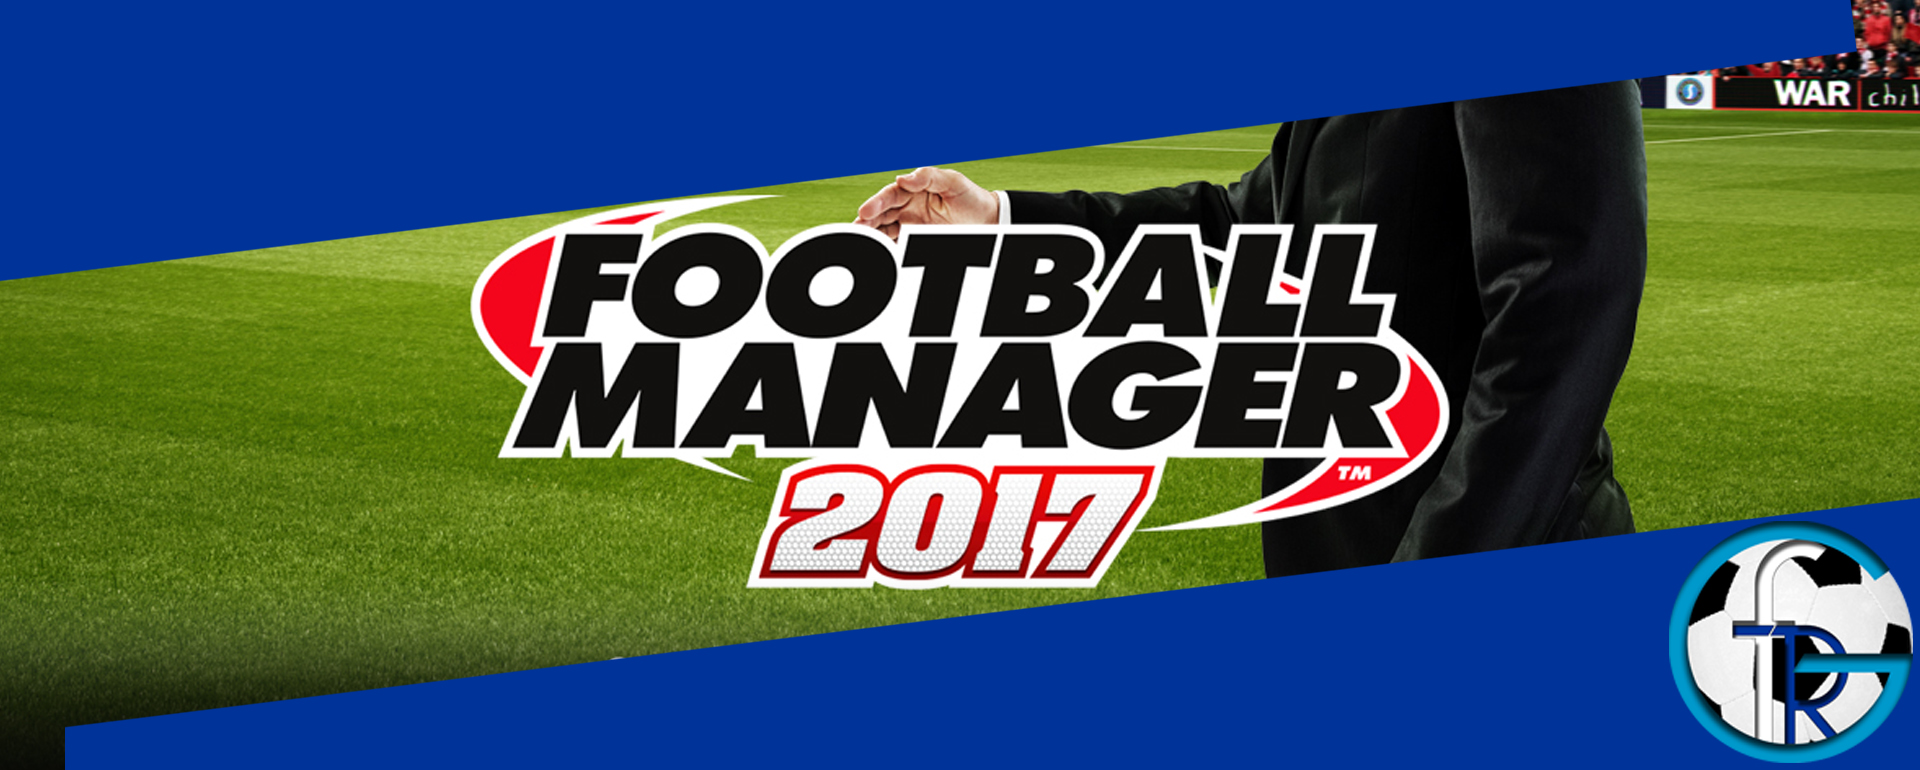 FOOTBALL MANAGER – jetzt auch Spiele bei fussball-ratgeber.com